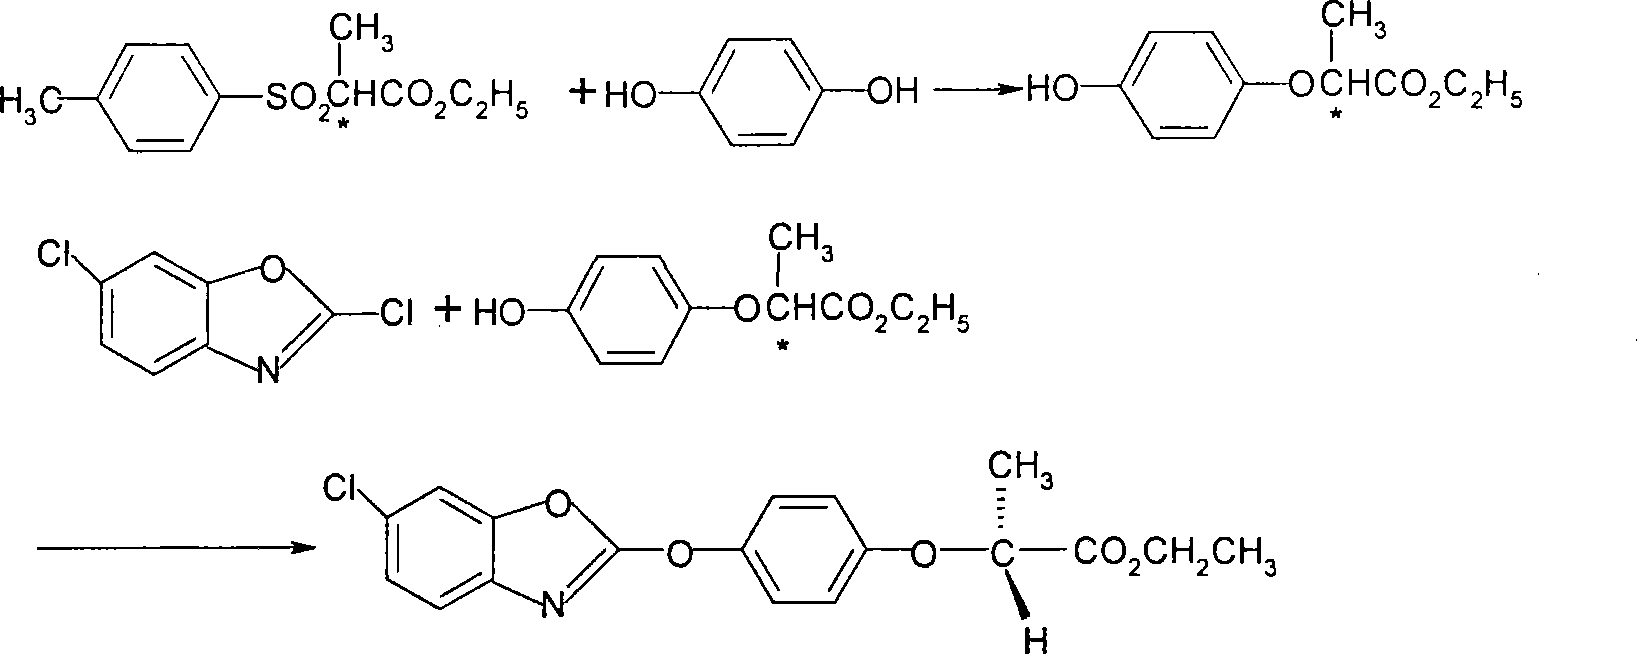 Method for preparing herbicide fenoxaprop-p-ethyl